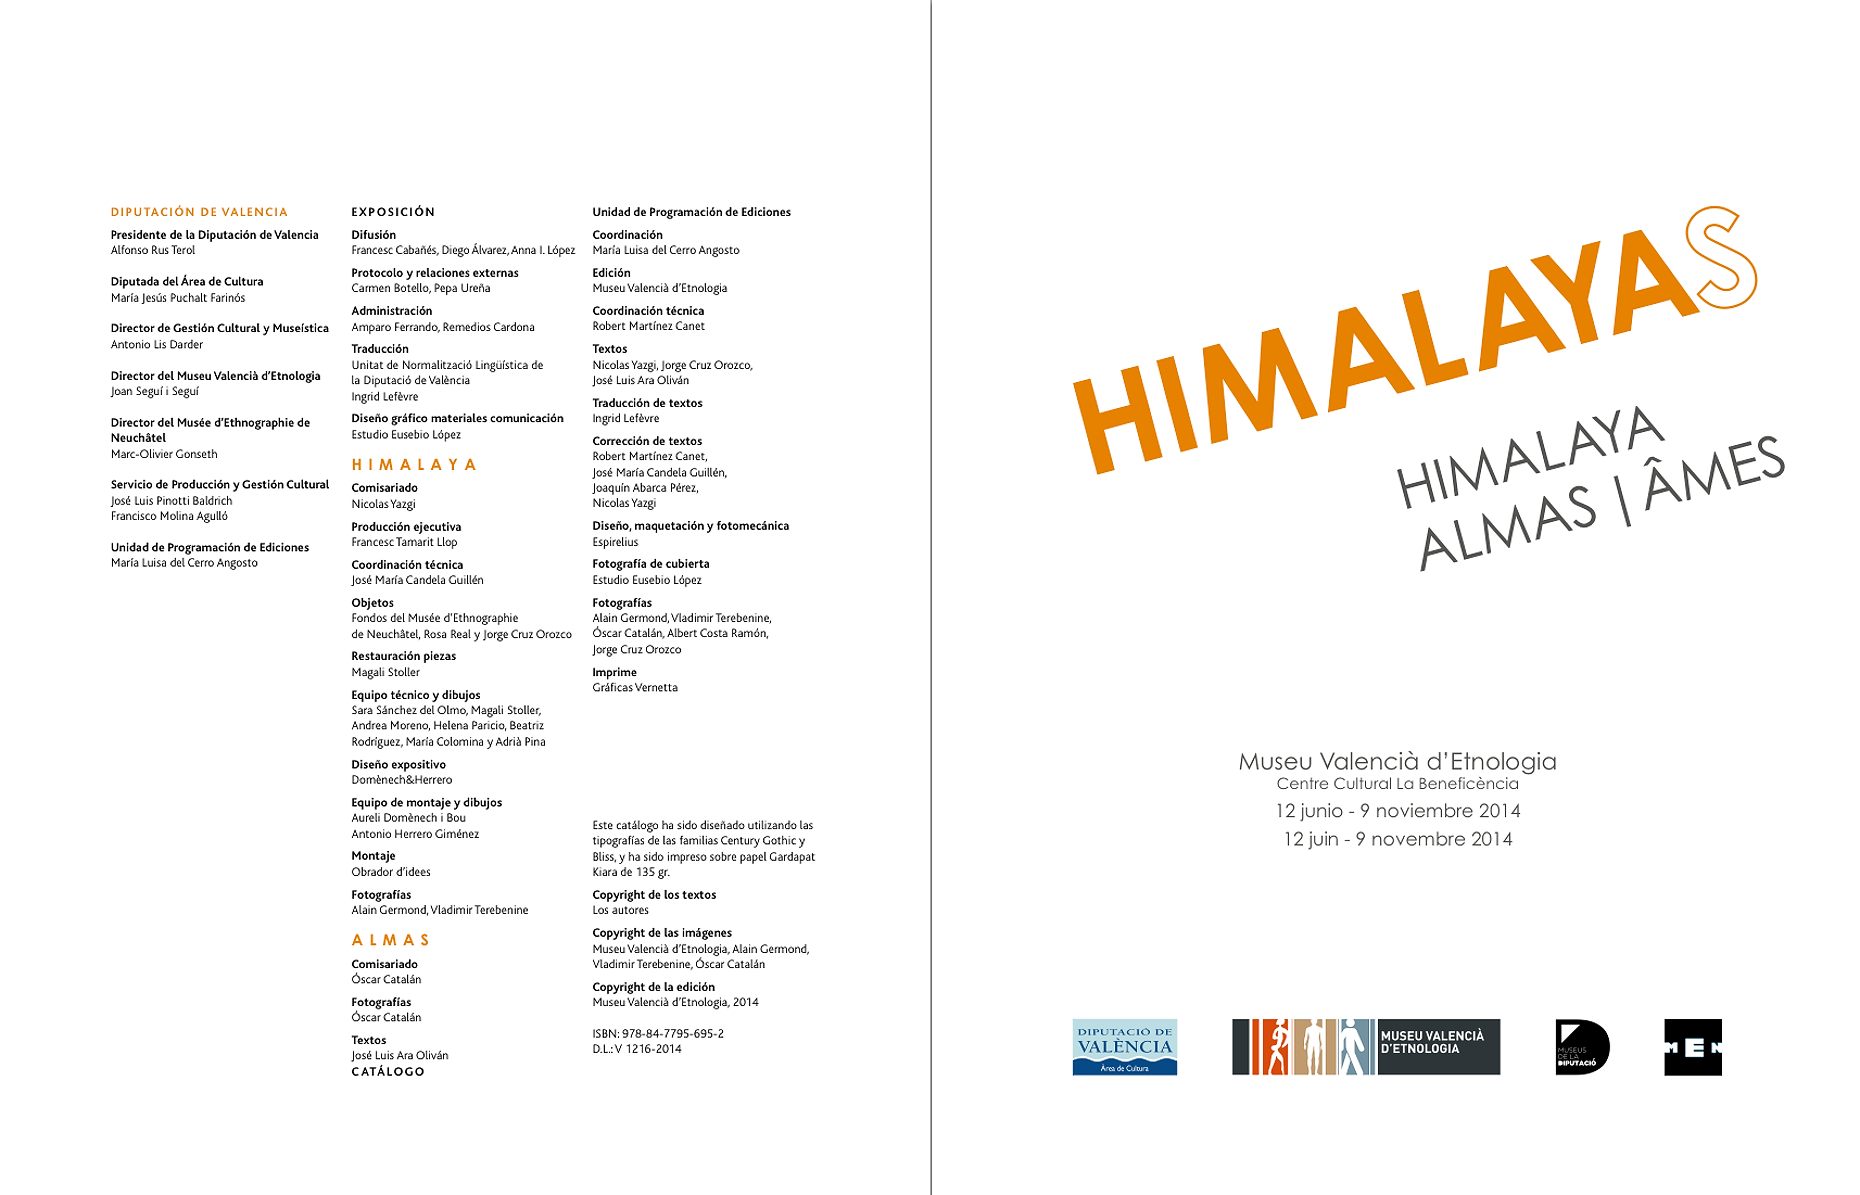 HIMALAYAS INTERIOR 5